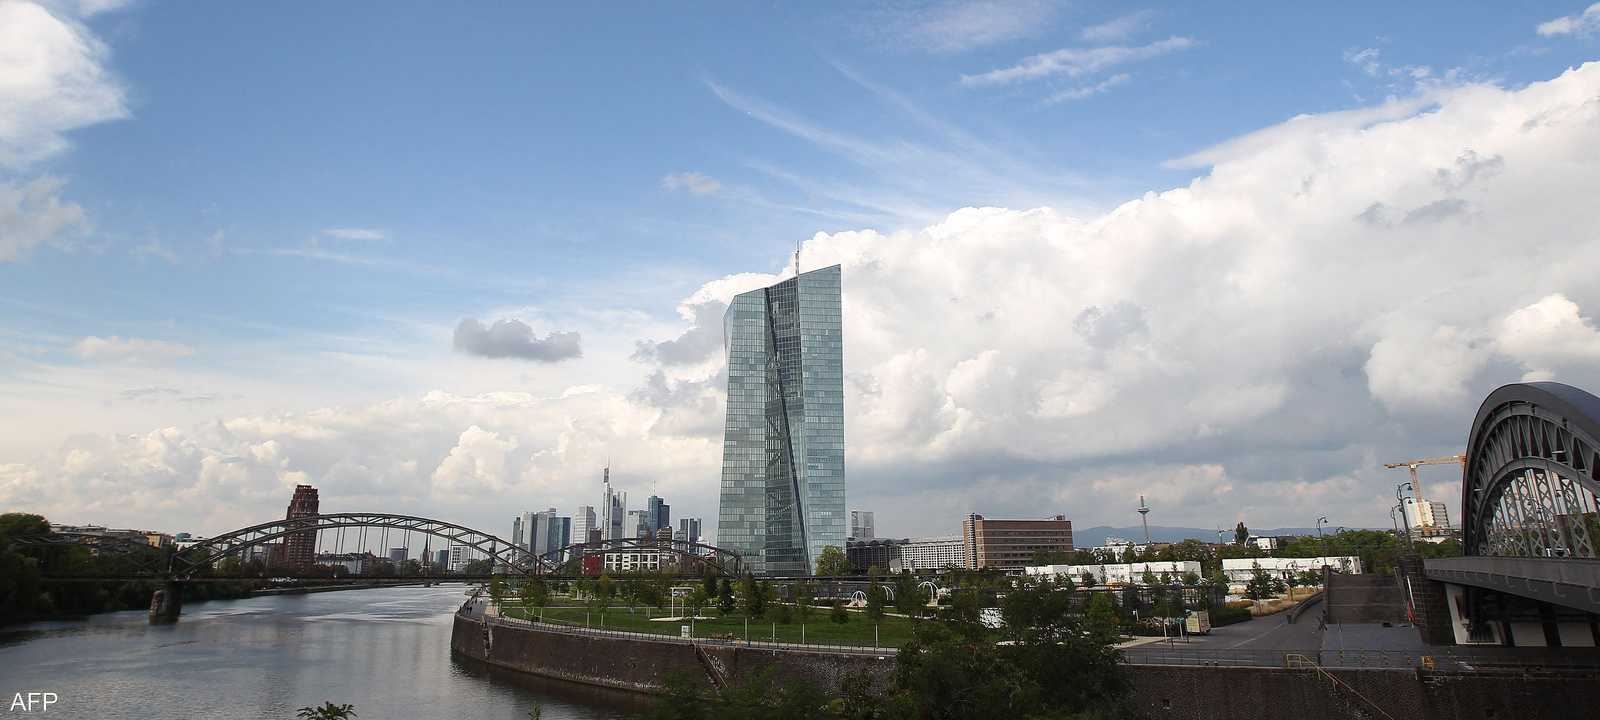 المقر الرئيسي للبنك المركزي الأوروبي في فرانكفورت، بألمانيا